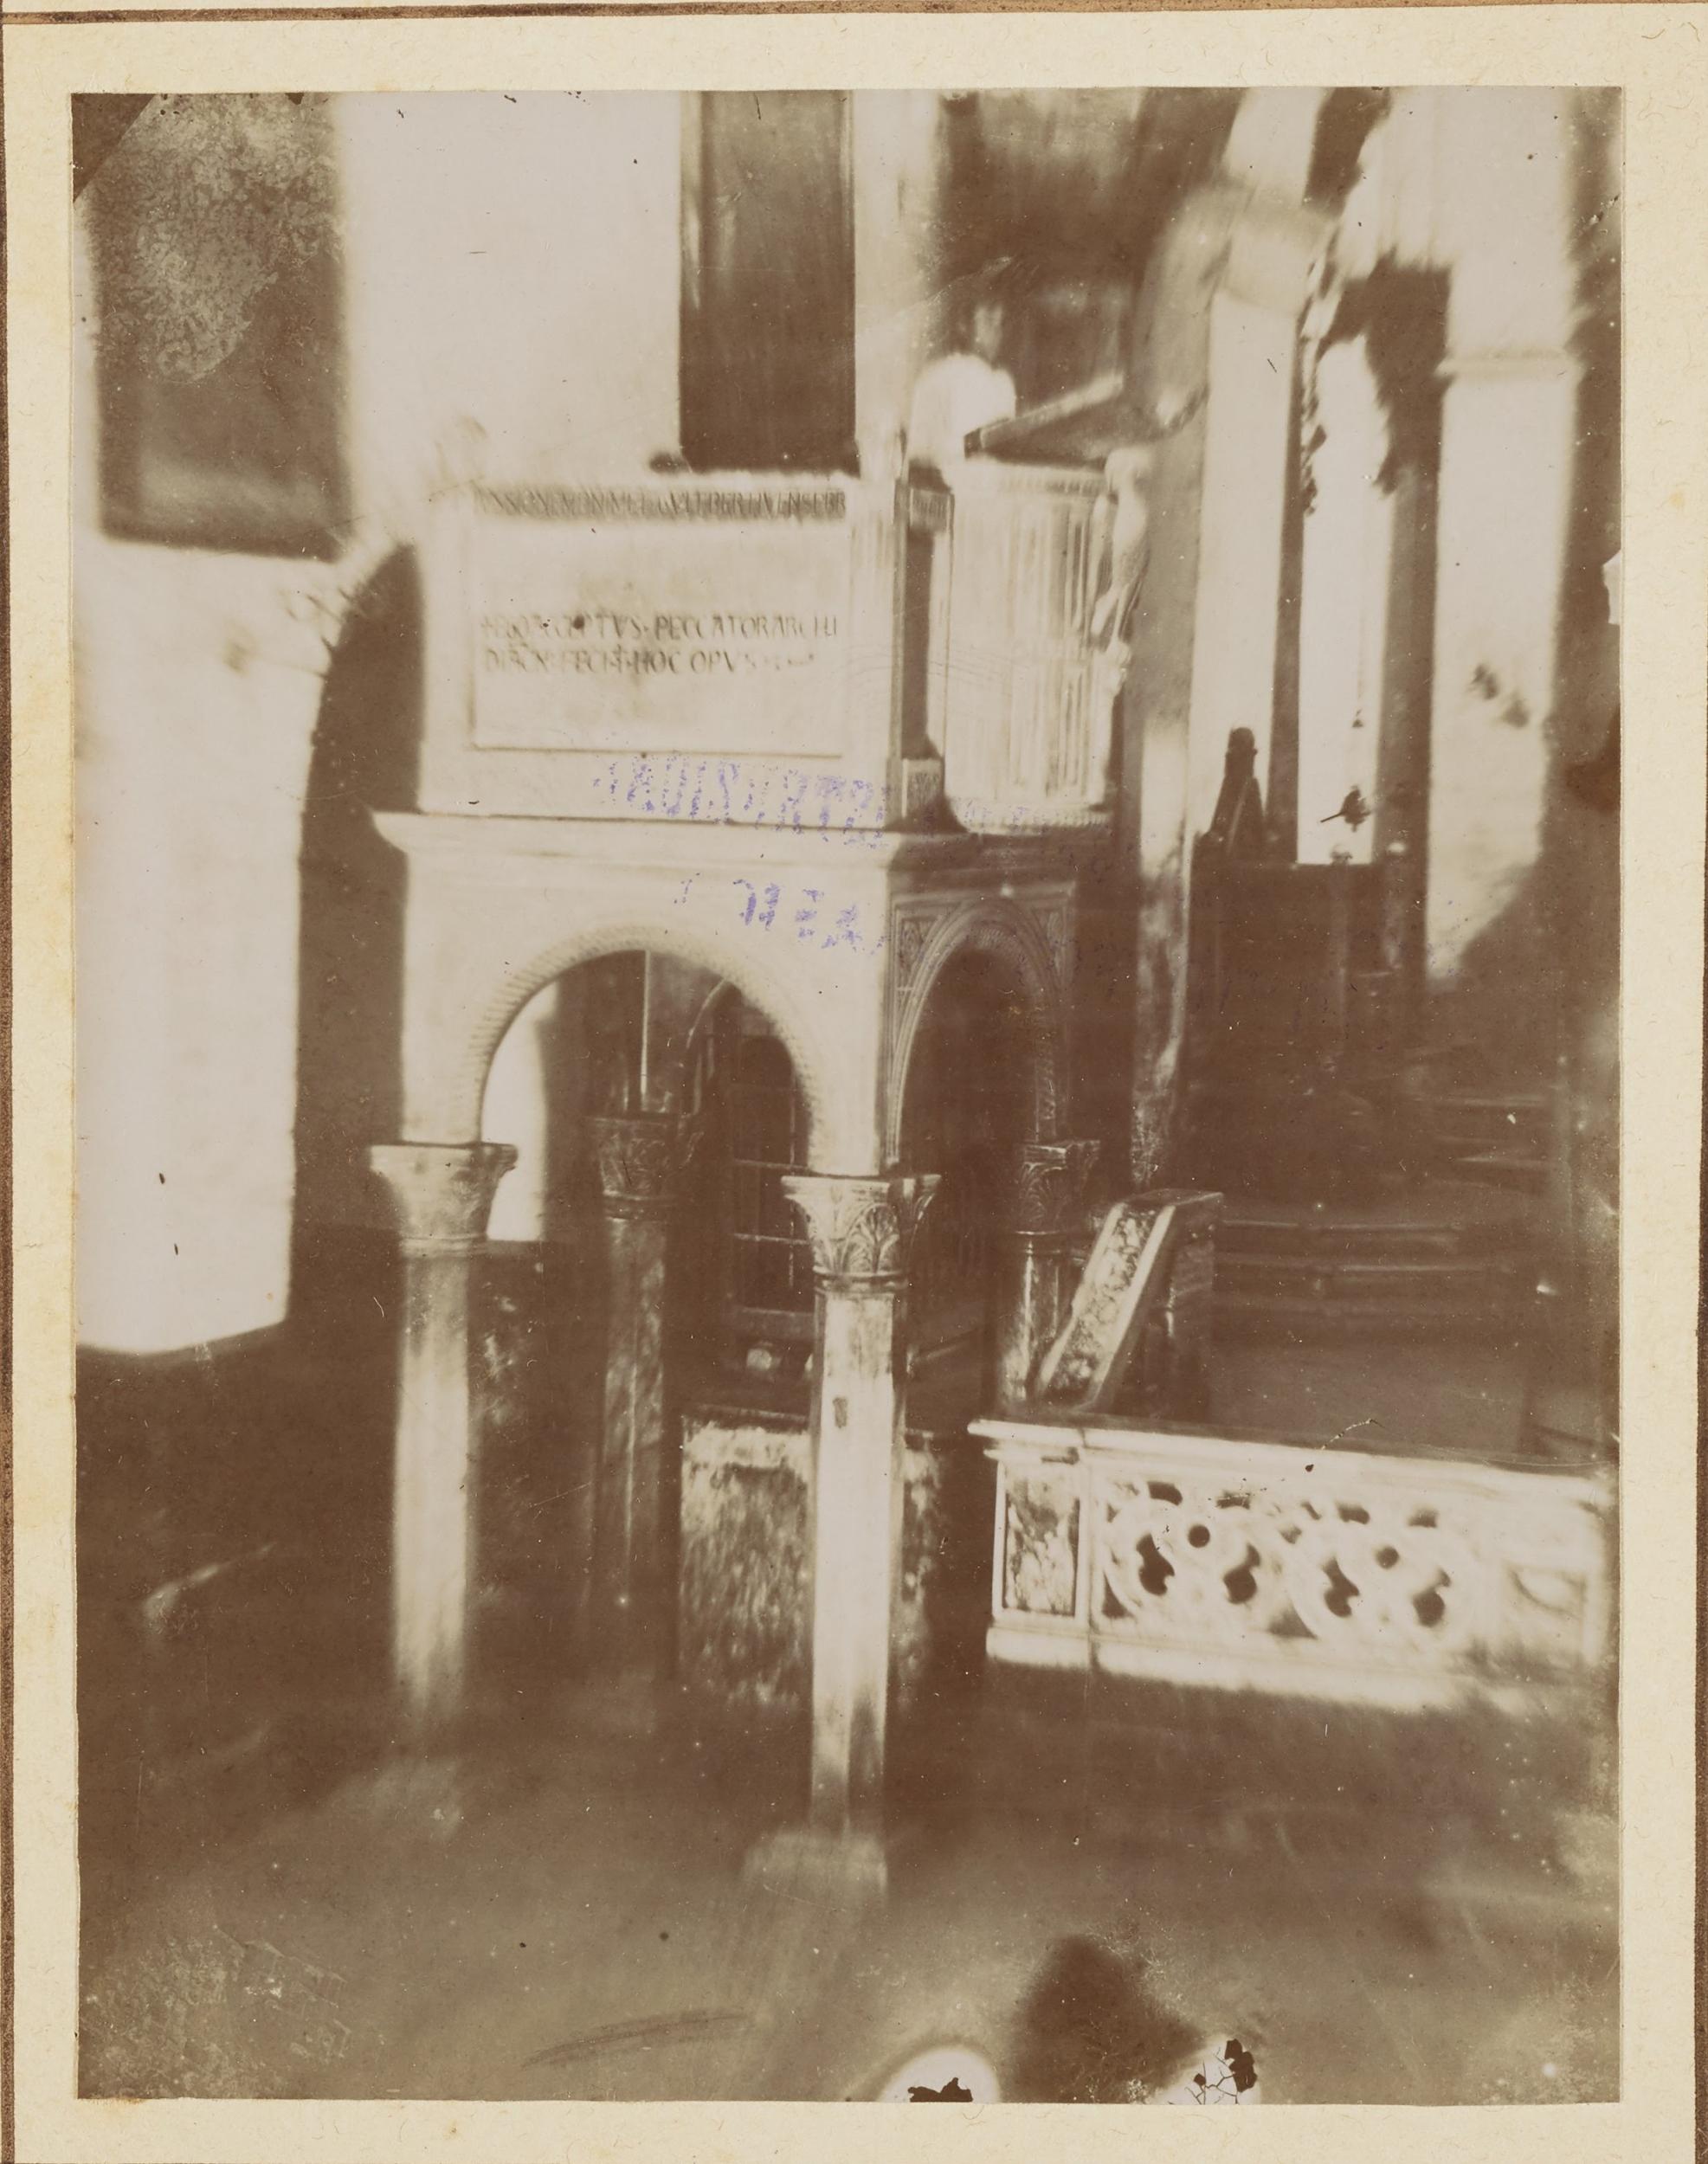 Fotografo non identificato, Canosa di Puglia - Chiesa di S. Sabino, ambone, prima del restauro, 1891-1910, aristotipo, MPI143587